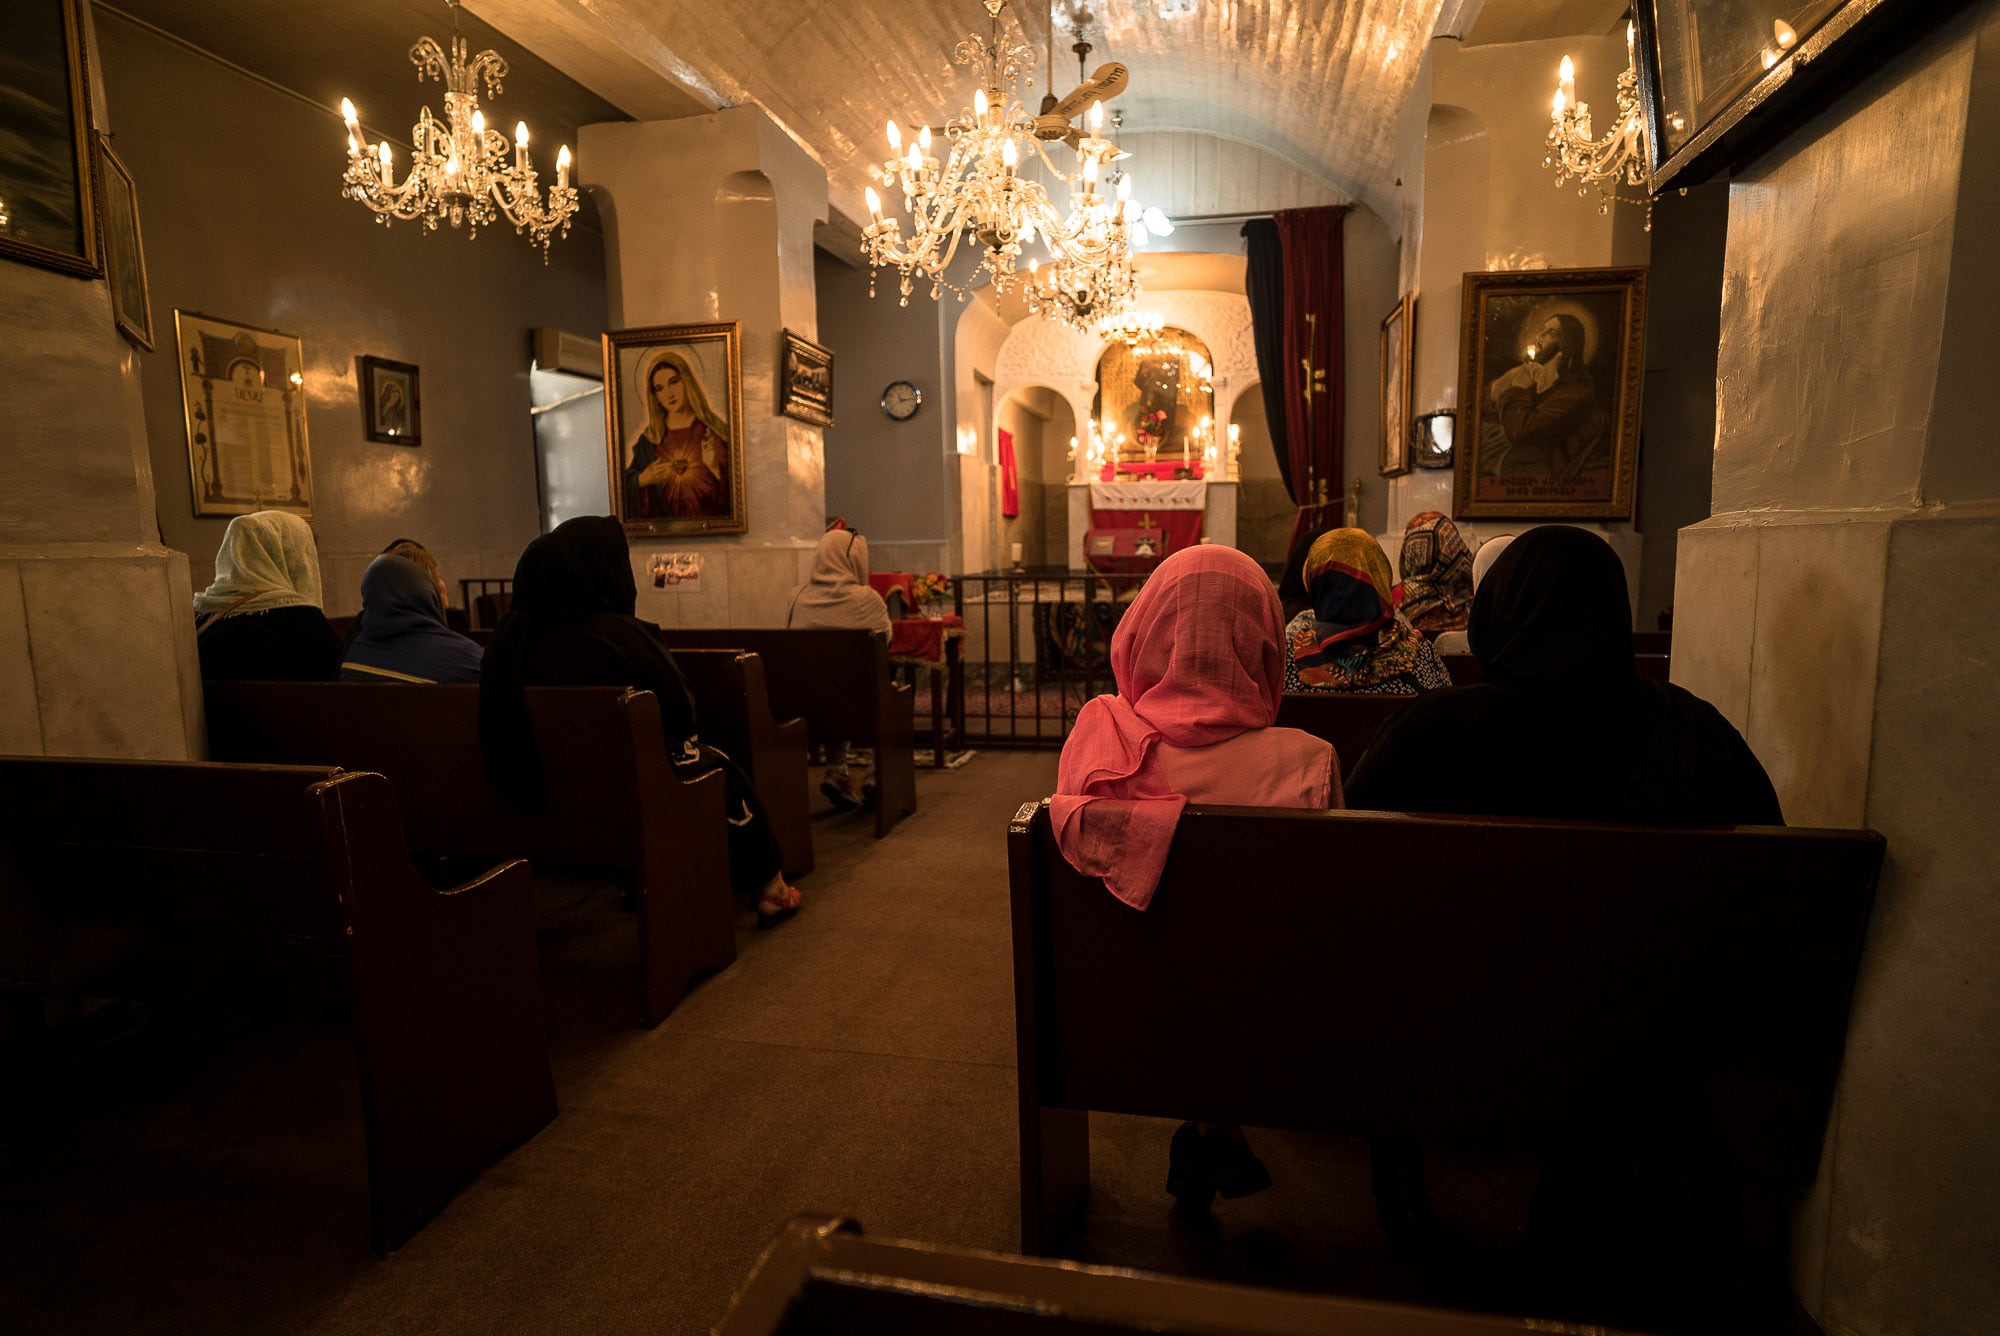 churchgoers in the Armenian church in Bandar Anzali